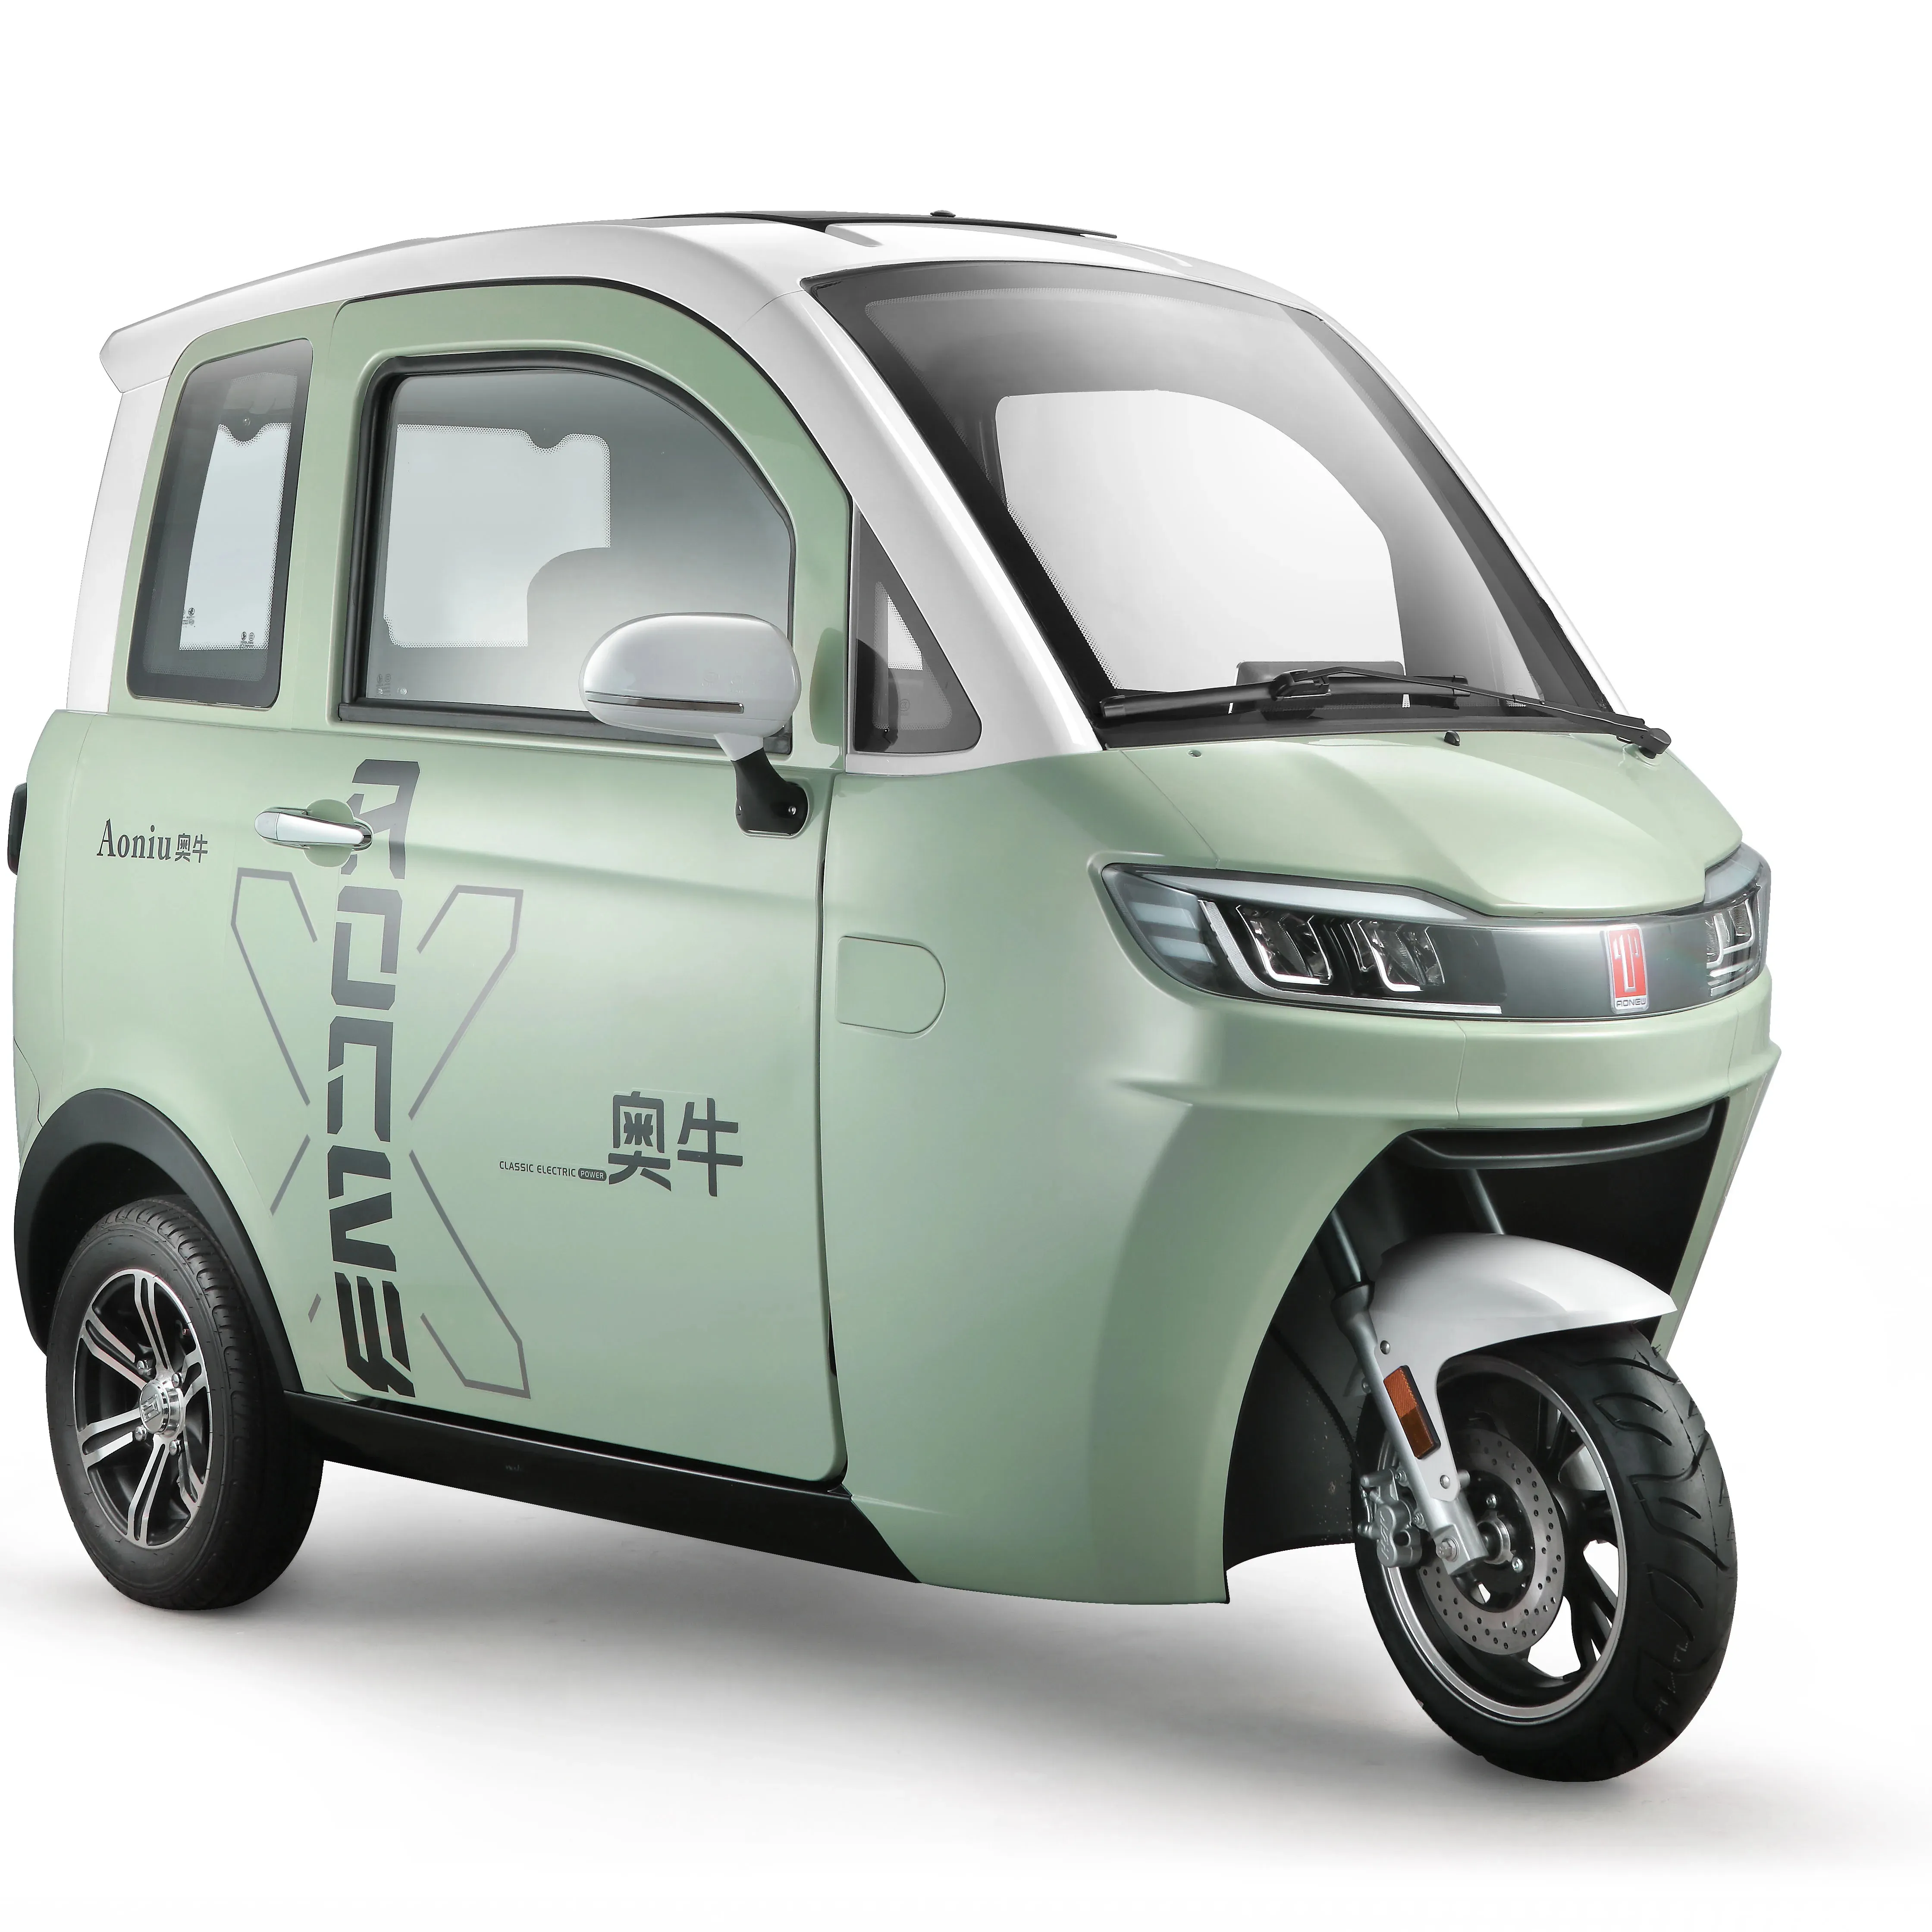 2022 распродажа, Новый энергетический Электрический мини-автомобиль Aonew, дешевый Электрический трехколесный велосипед для взрослых, трехколесный велосипед